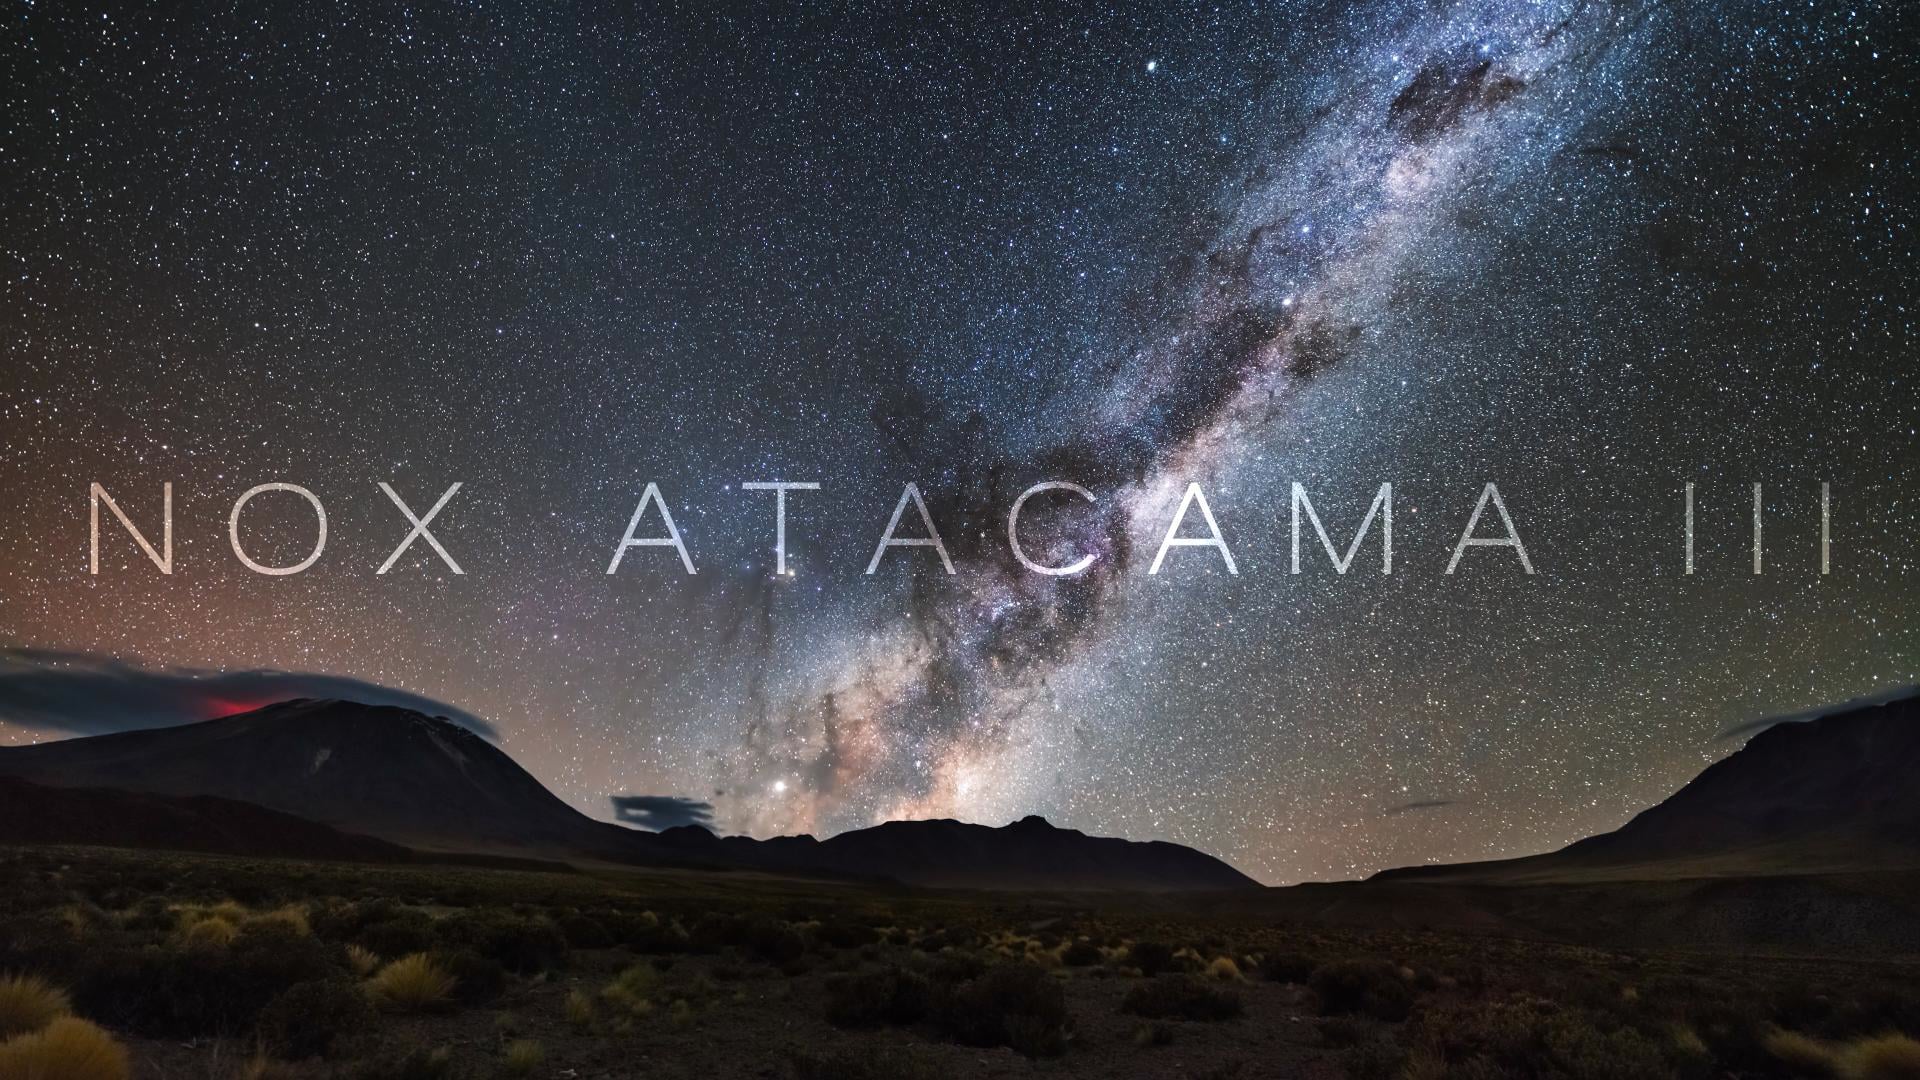 Nox Atacama III